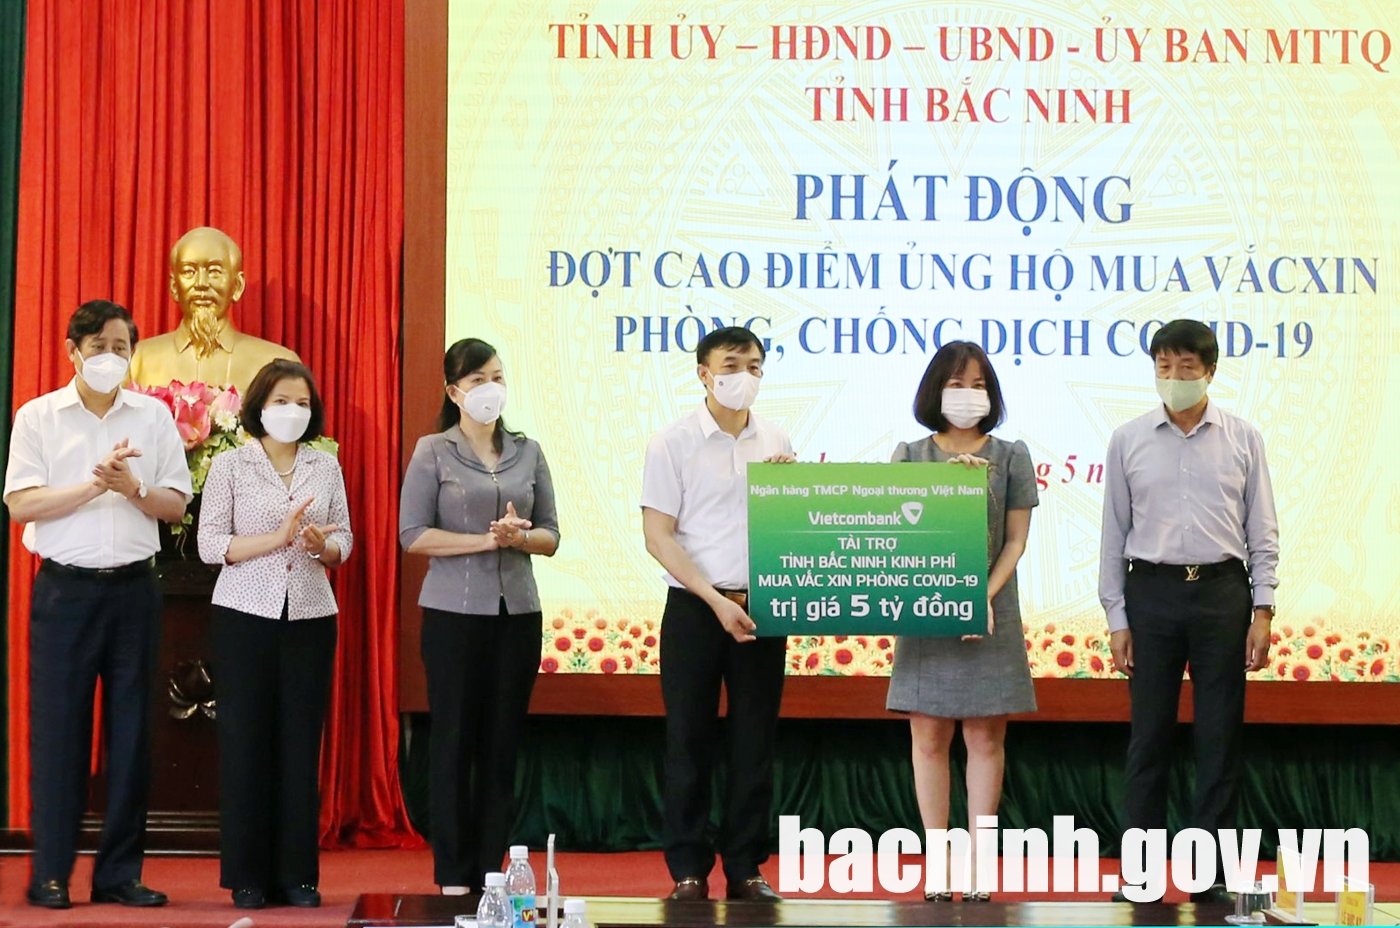 Bắc Ninh: Sau một ngày phát động, các doanh nghiệp đã đóng góp 75 tỷ đồng mua vaccine ngừa Covid-19 - Ảnh 1.